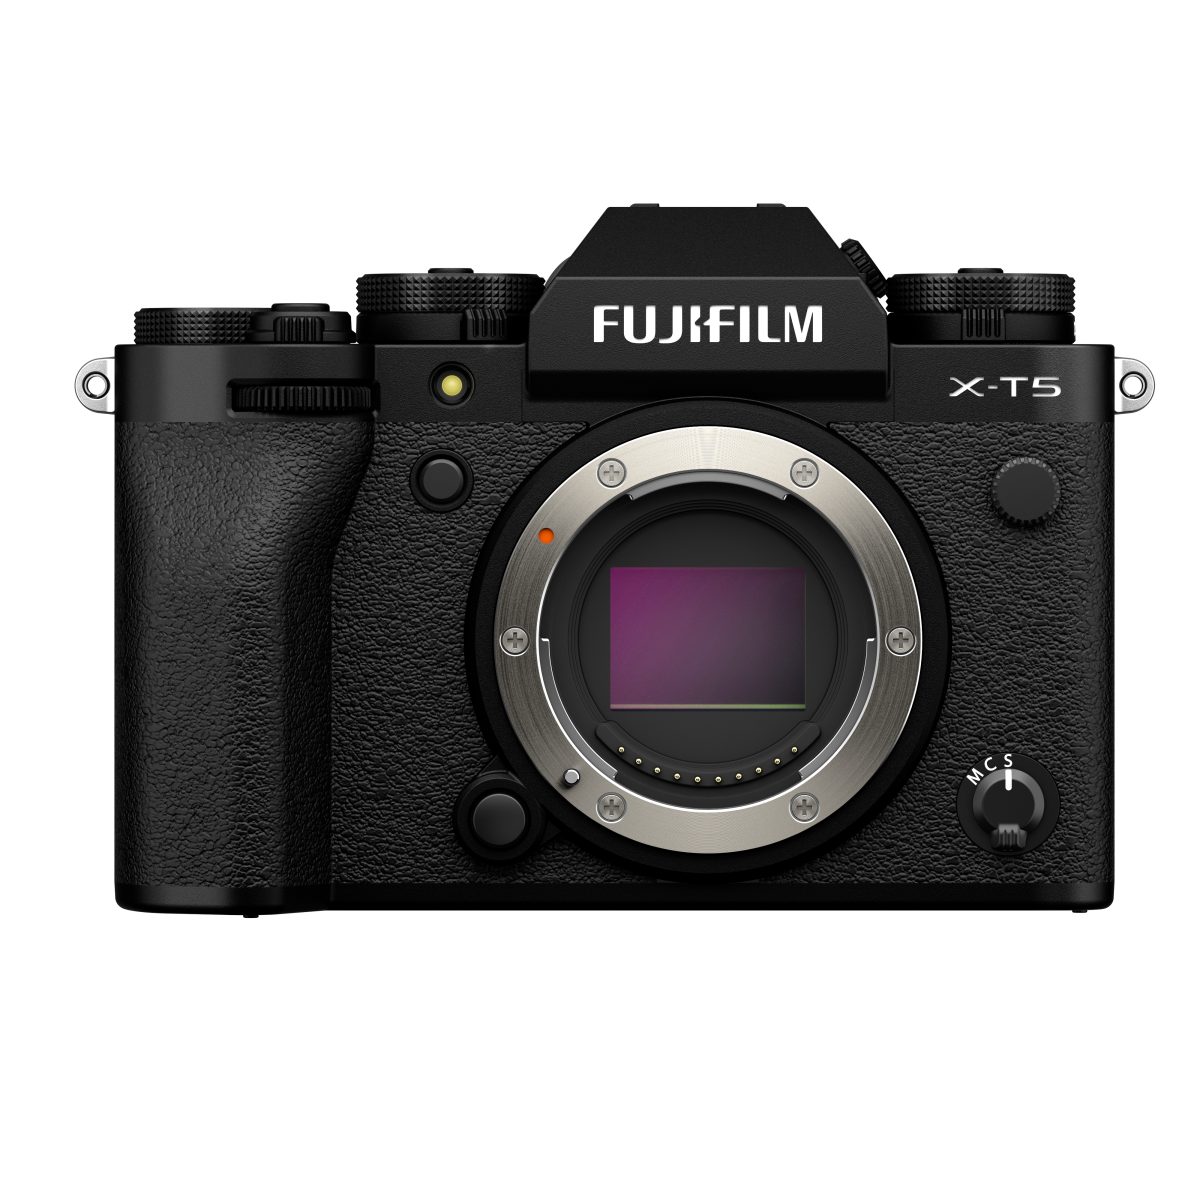 Die Fujifilm X-T5 ist eine Kamera der fünften Generation der X-T-Serie